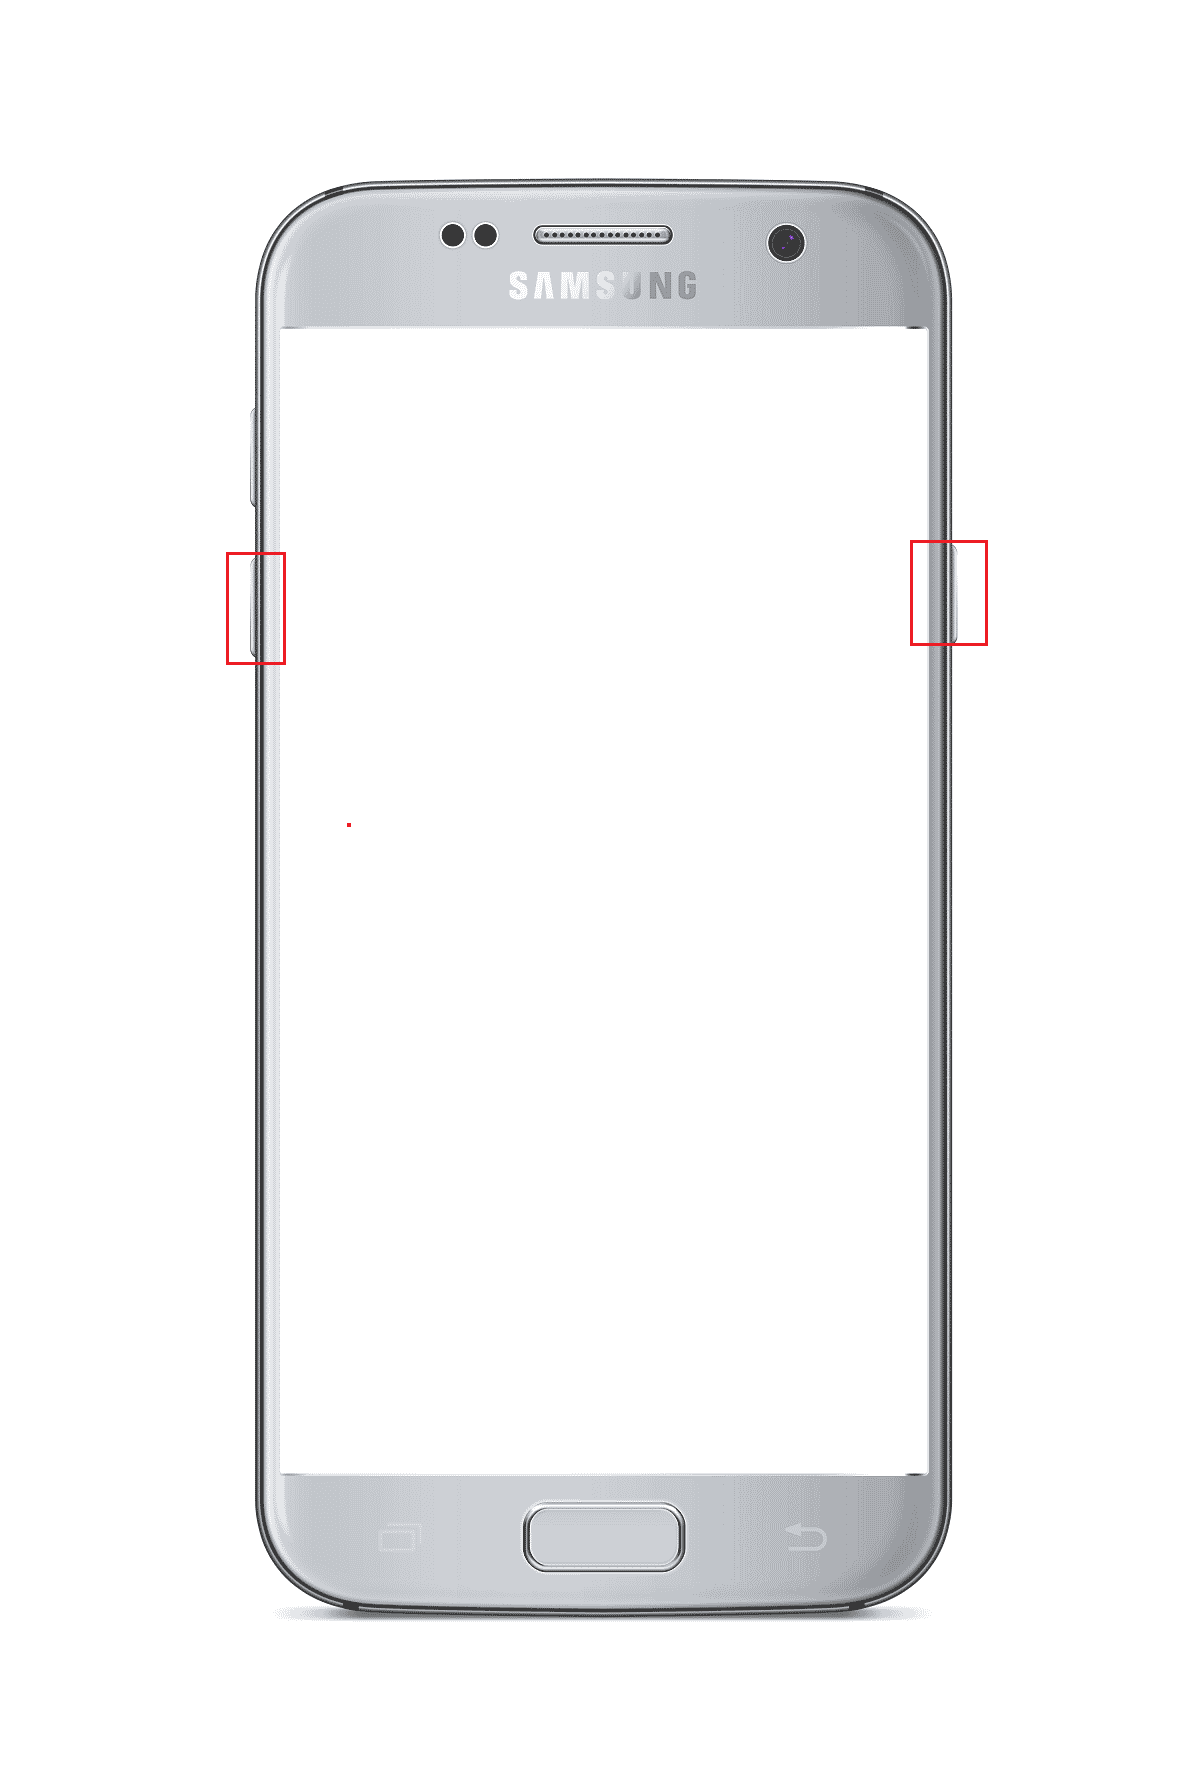 presione el botón para bajar el volumen y el botón de encendido en el teléfono Samsung Android